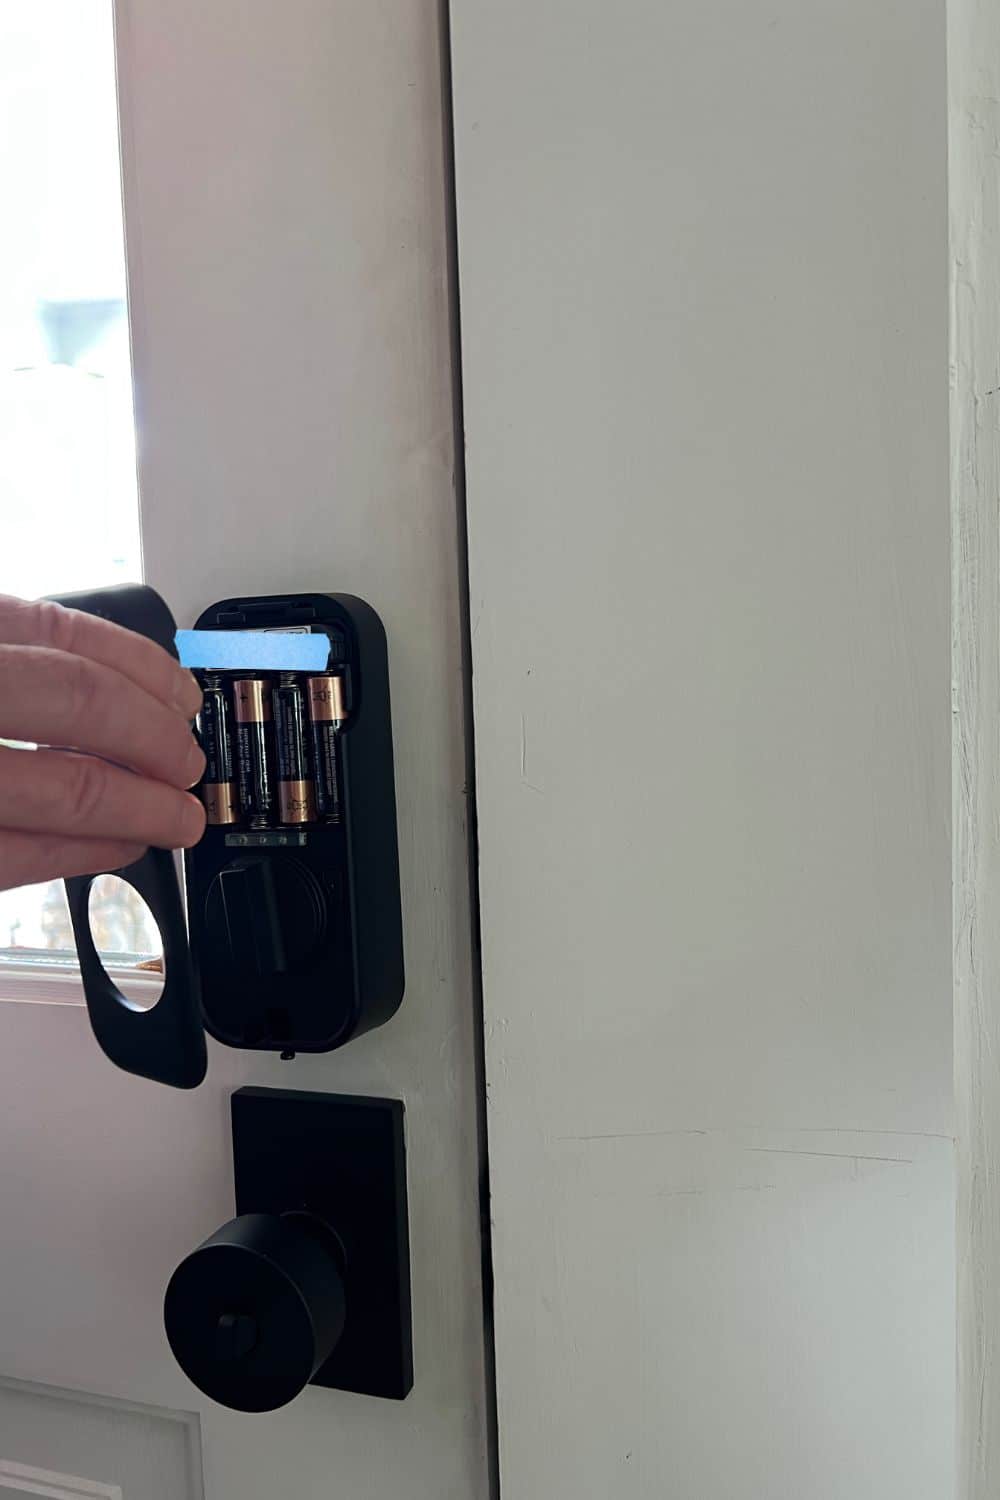 When Should You Change Your Door Lock Codes?